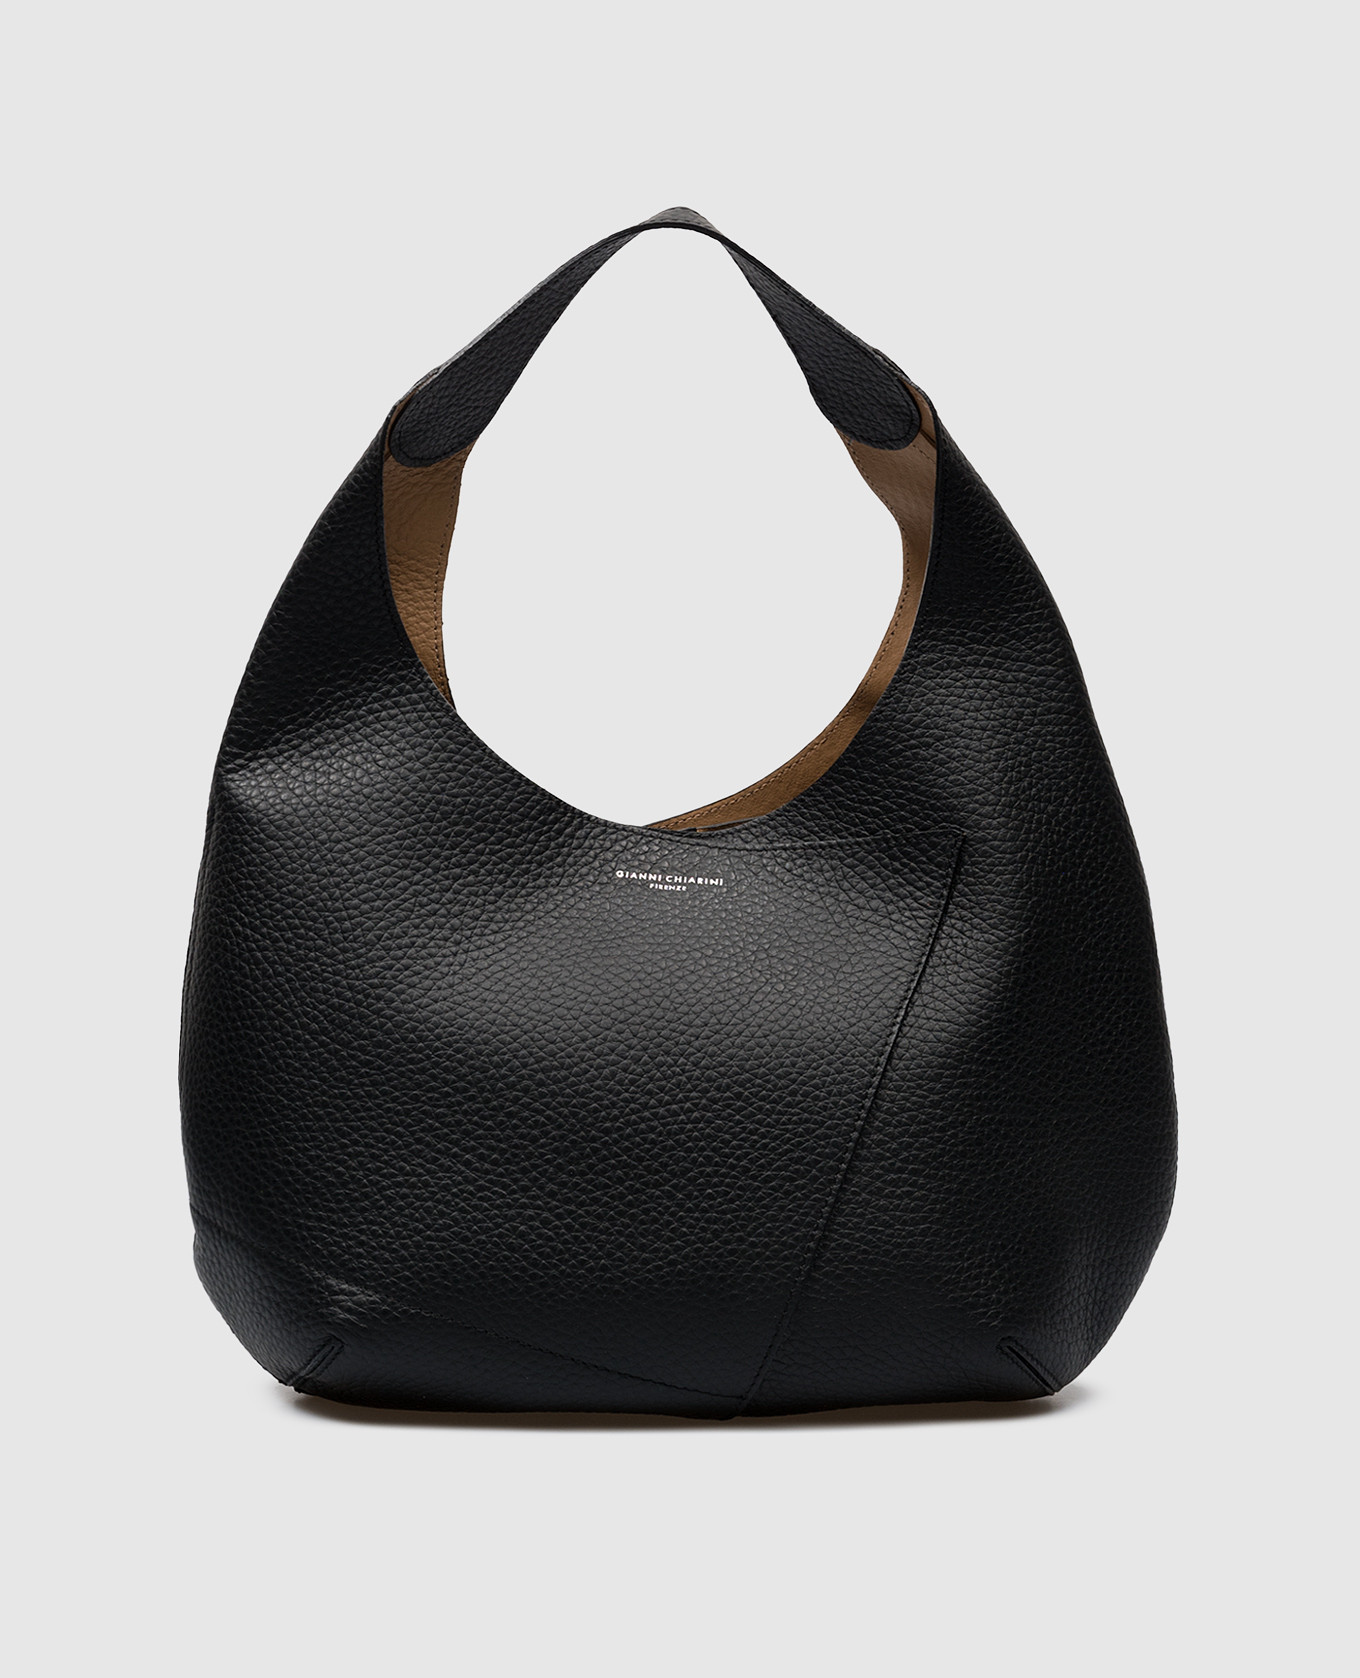 Черная кожаная сумка Euforia с принтом логотипа.